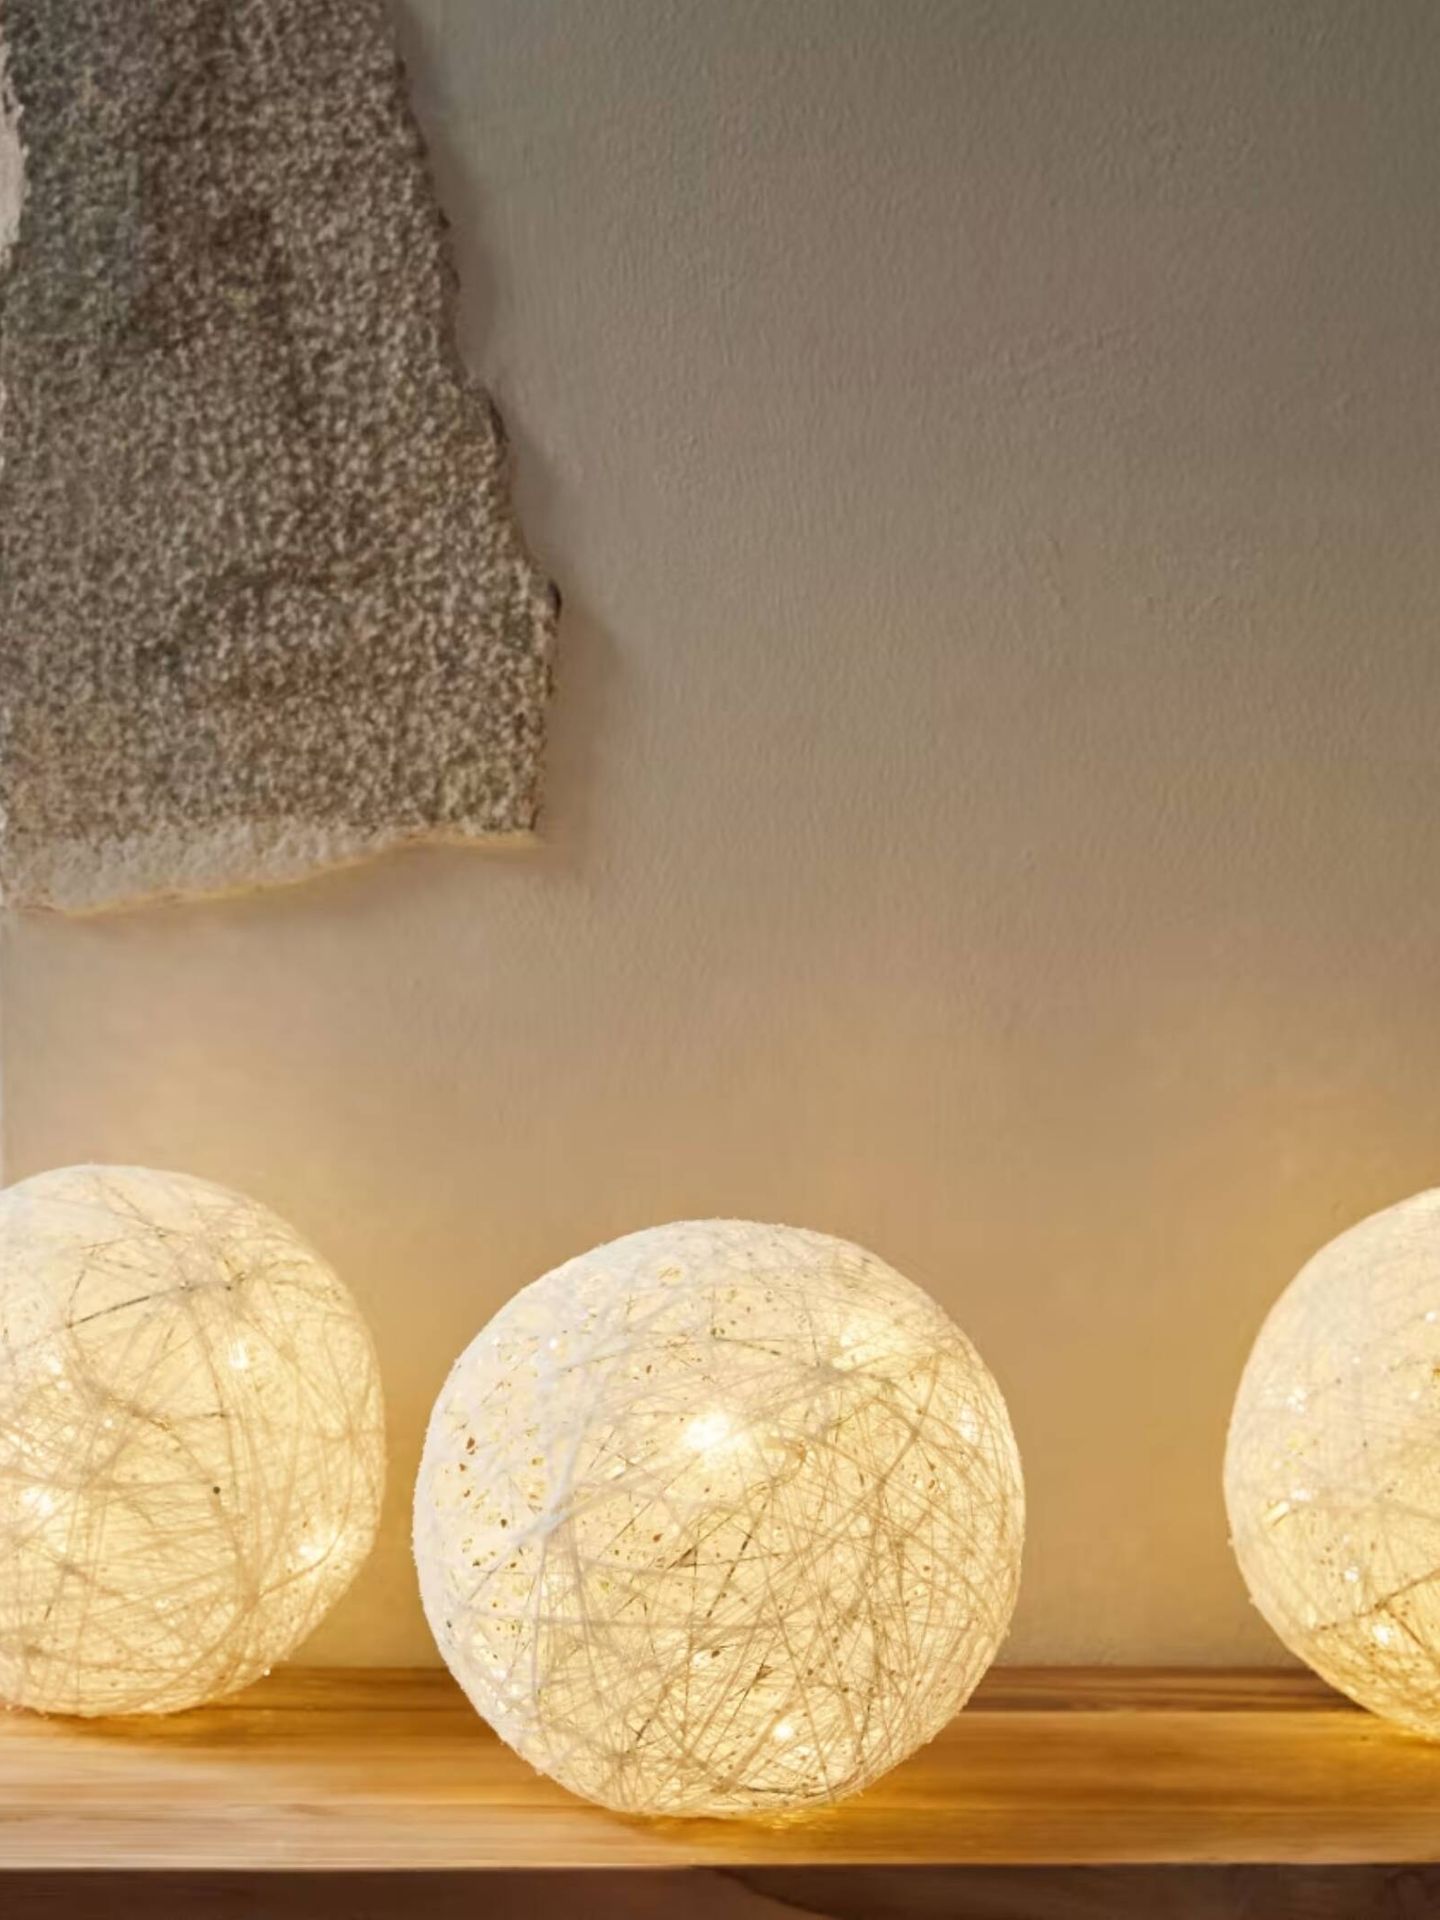 Kave Home ilumina tu hogar con esta lámpara. (Cortesía/Kave Home)